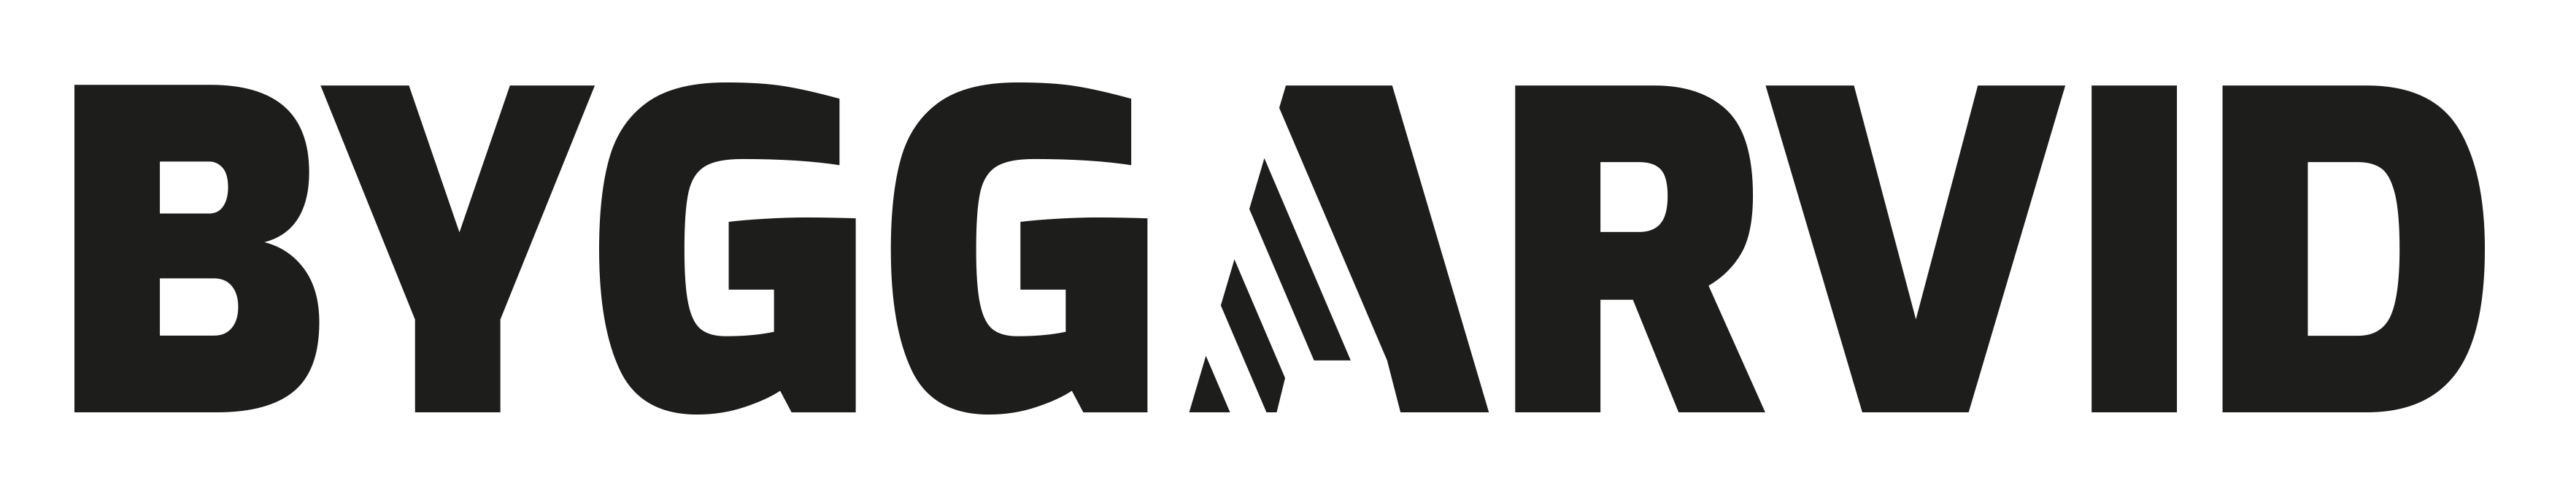 ByggArvid logo Black